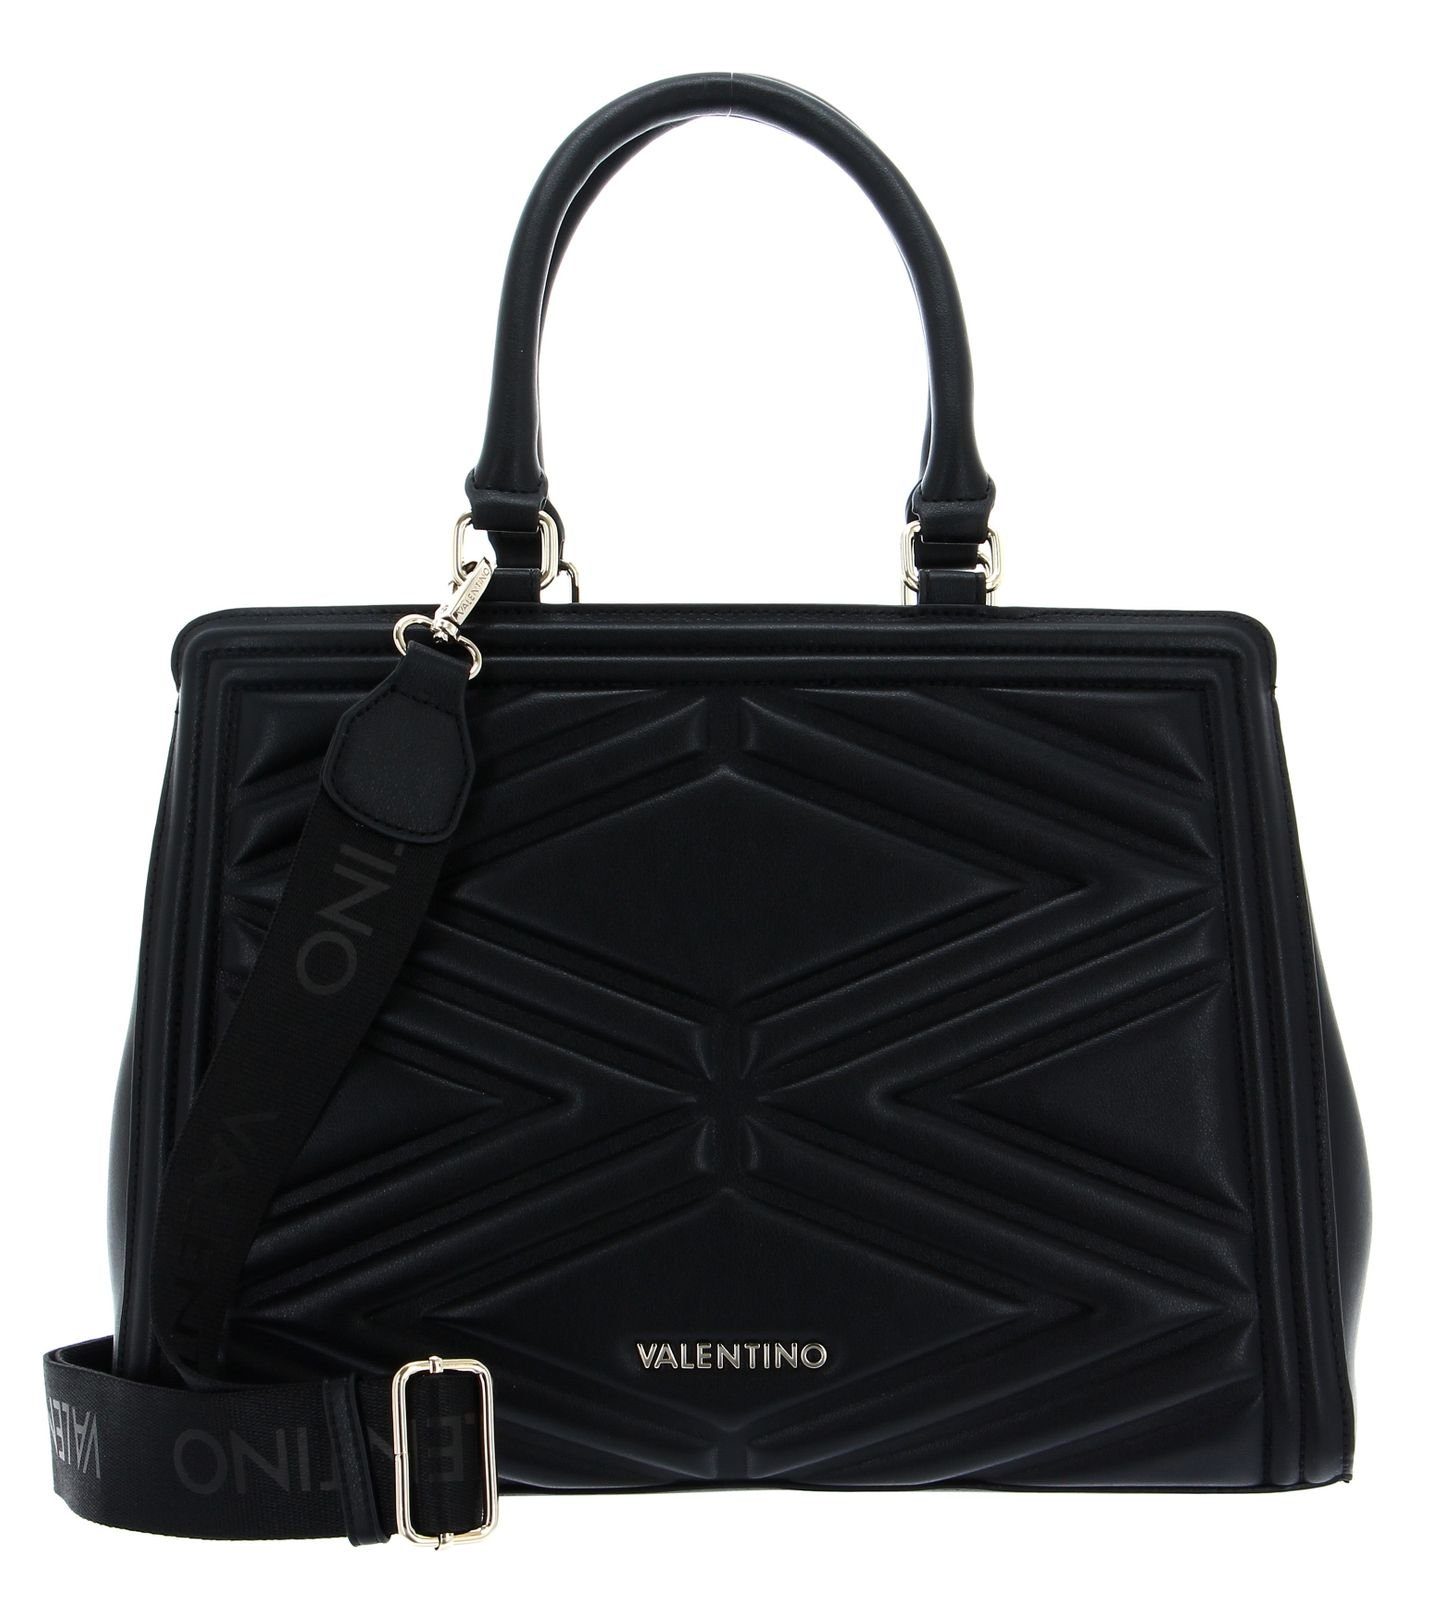 VALENTINO BAGS Handtasche Souvenir Re online kaufen | OTTO